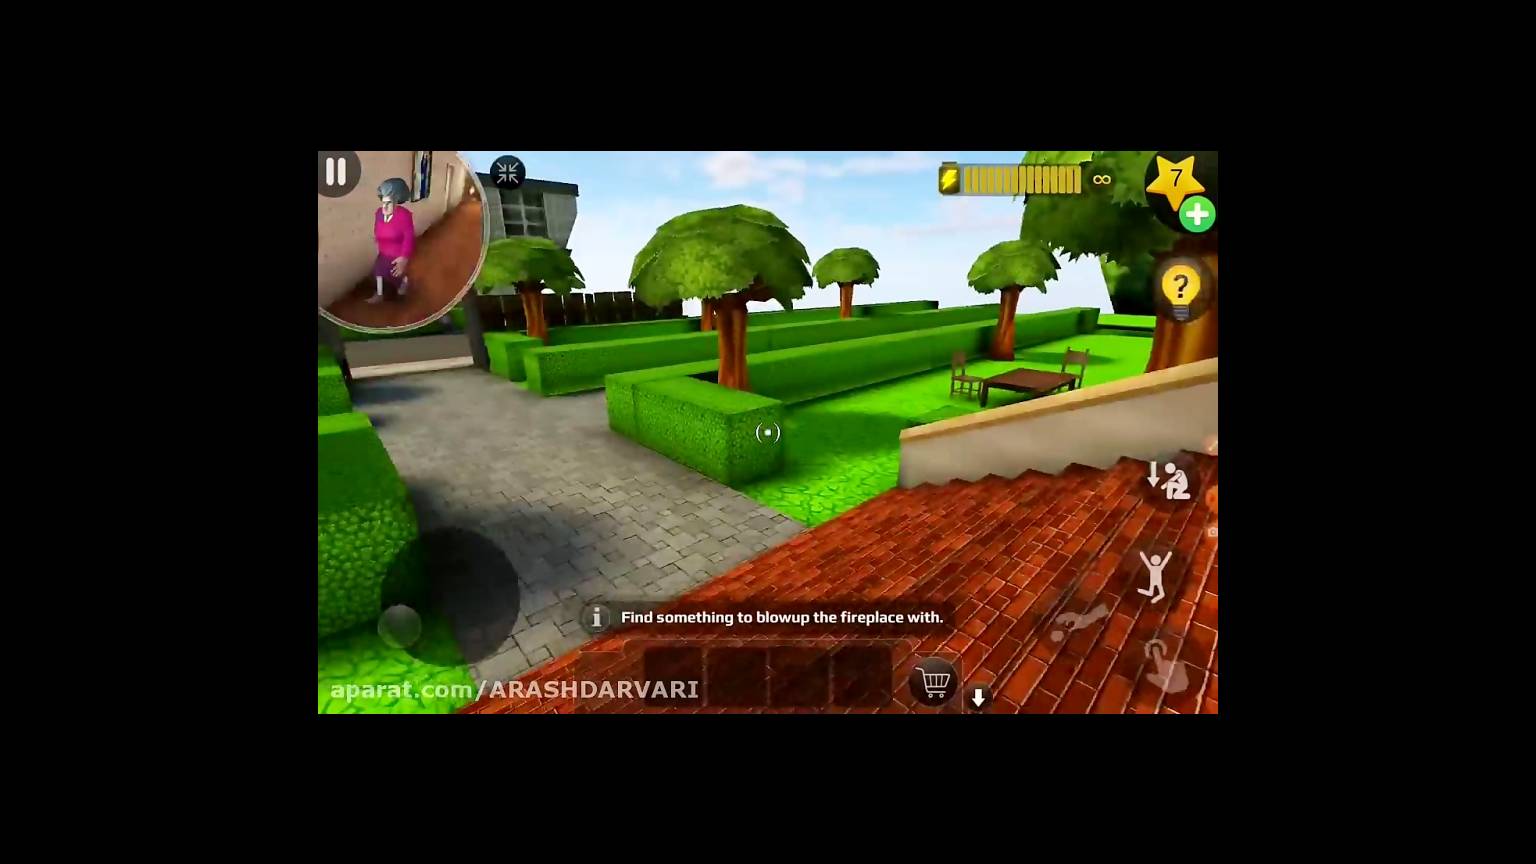 Scary Teacher 3D  miss t Blown Up Gameplay Walkthrough (iOS